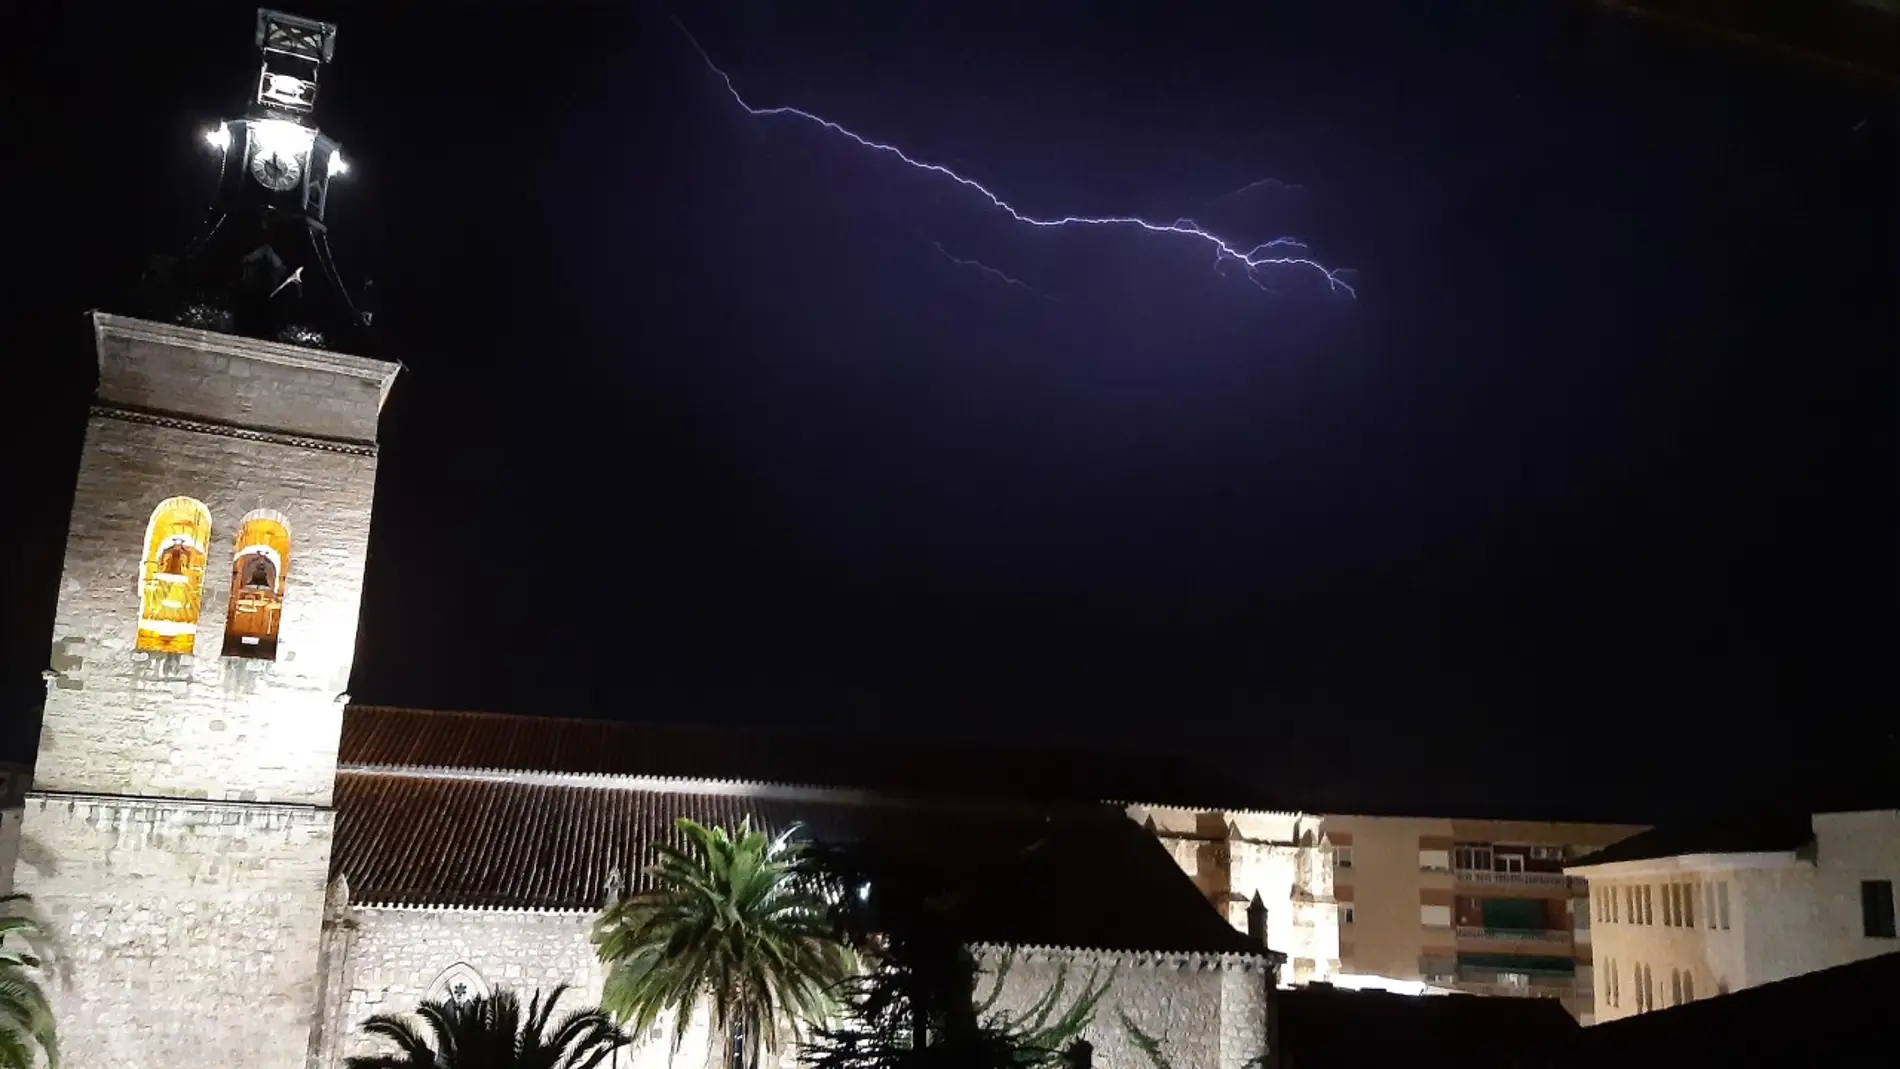 La tormenta dejó numerosos rayos en Ciudad Real